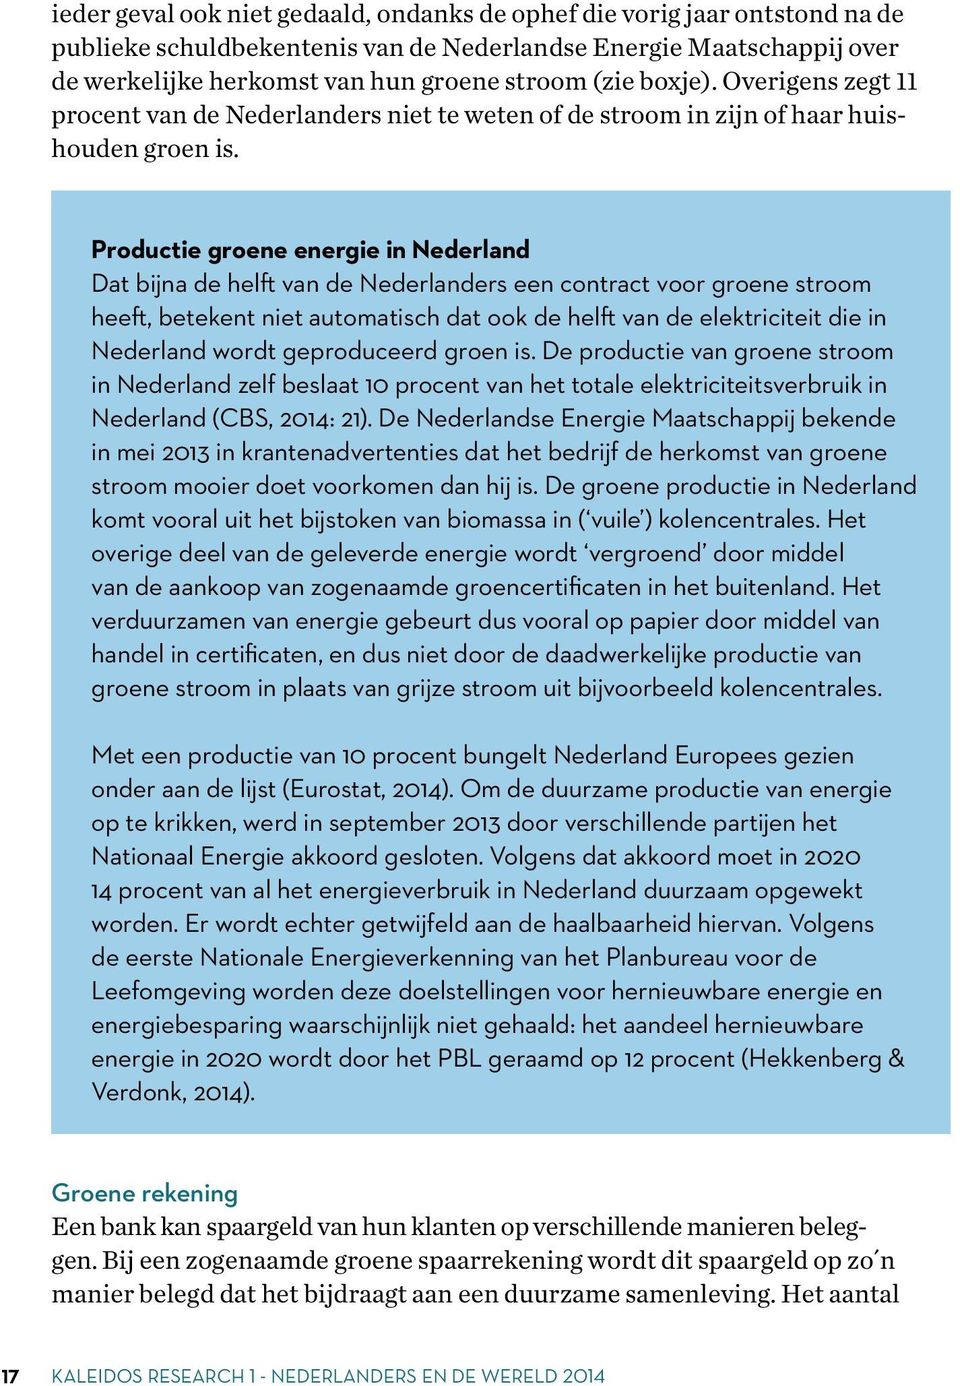 Productie groene energie in Nederland Dat bijna de helft van de Nederlanders een contract voor groene stroom heeft, betekent niet automatisch dat ook de helft van de elektriciteit die in Nederland